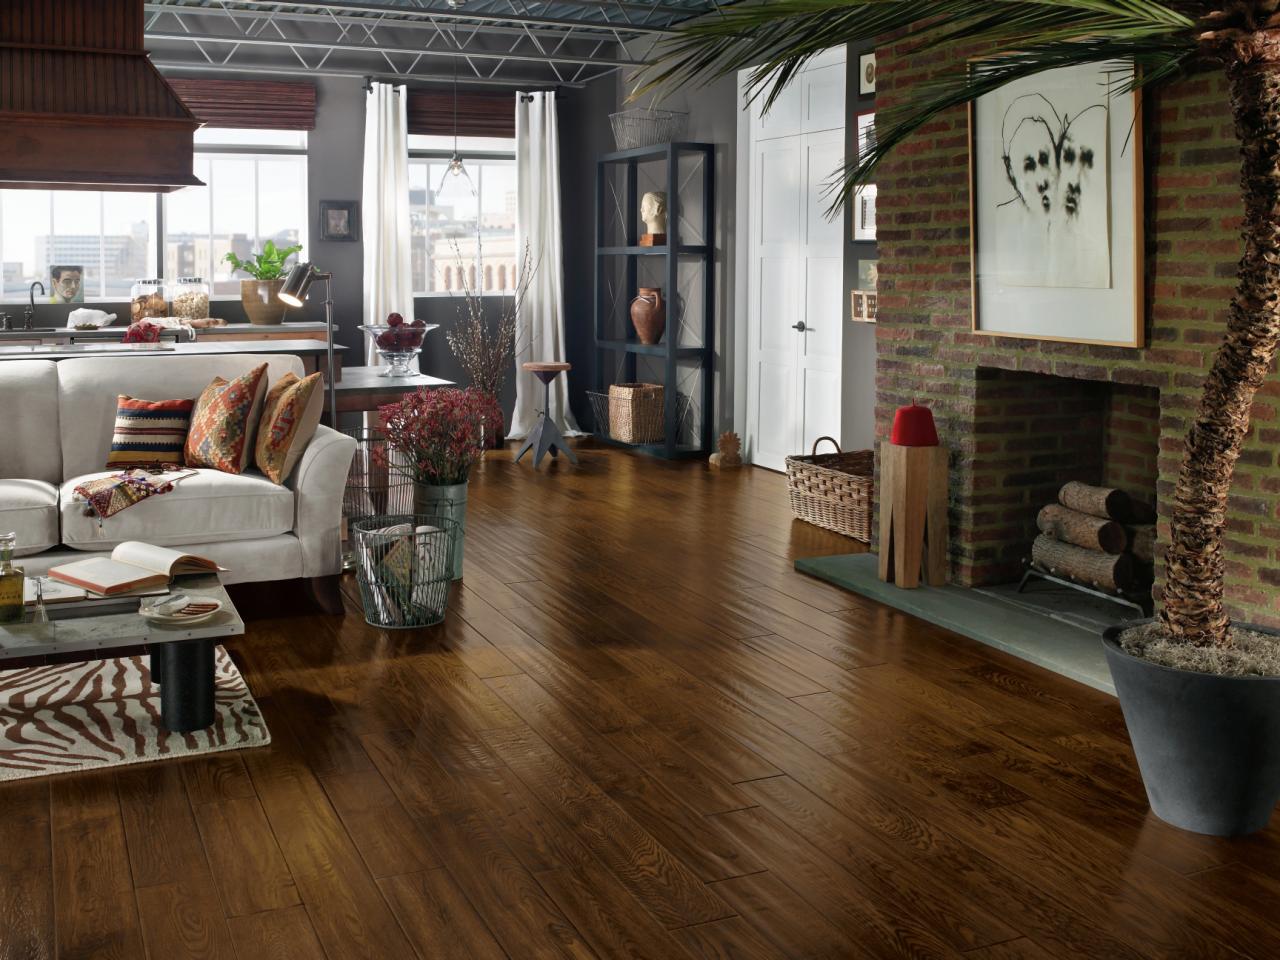 Top Living Room Flooring Options, Floor And Decor Hardwood Floor Reviews